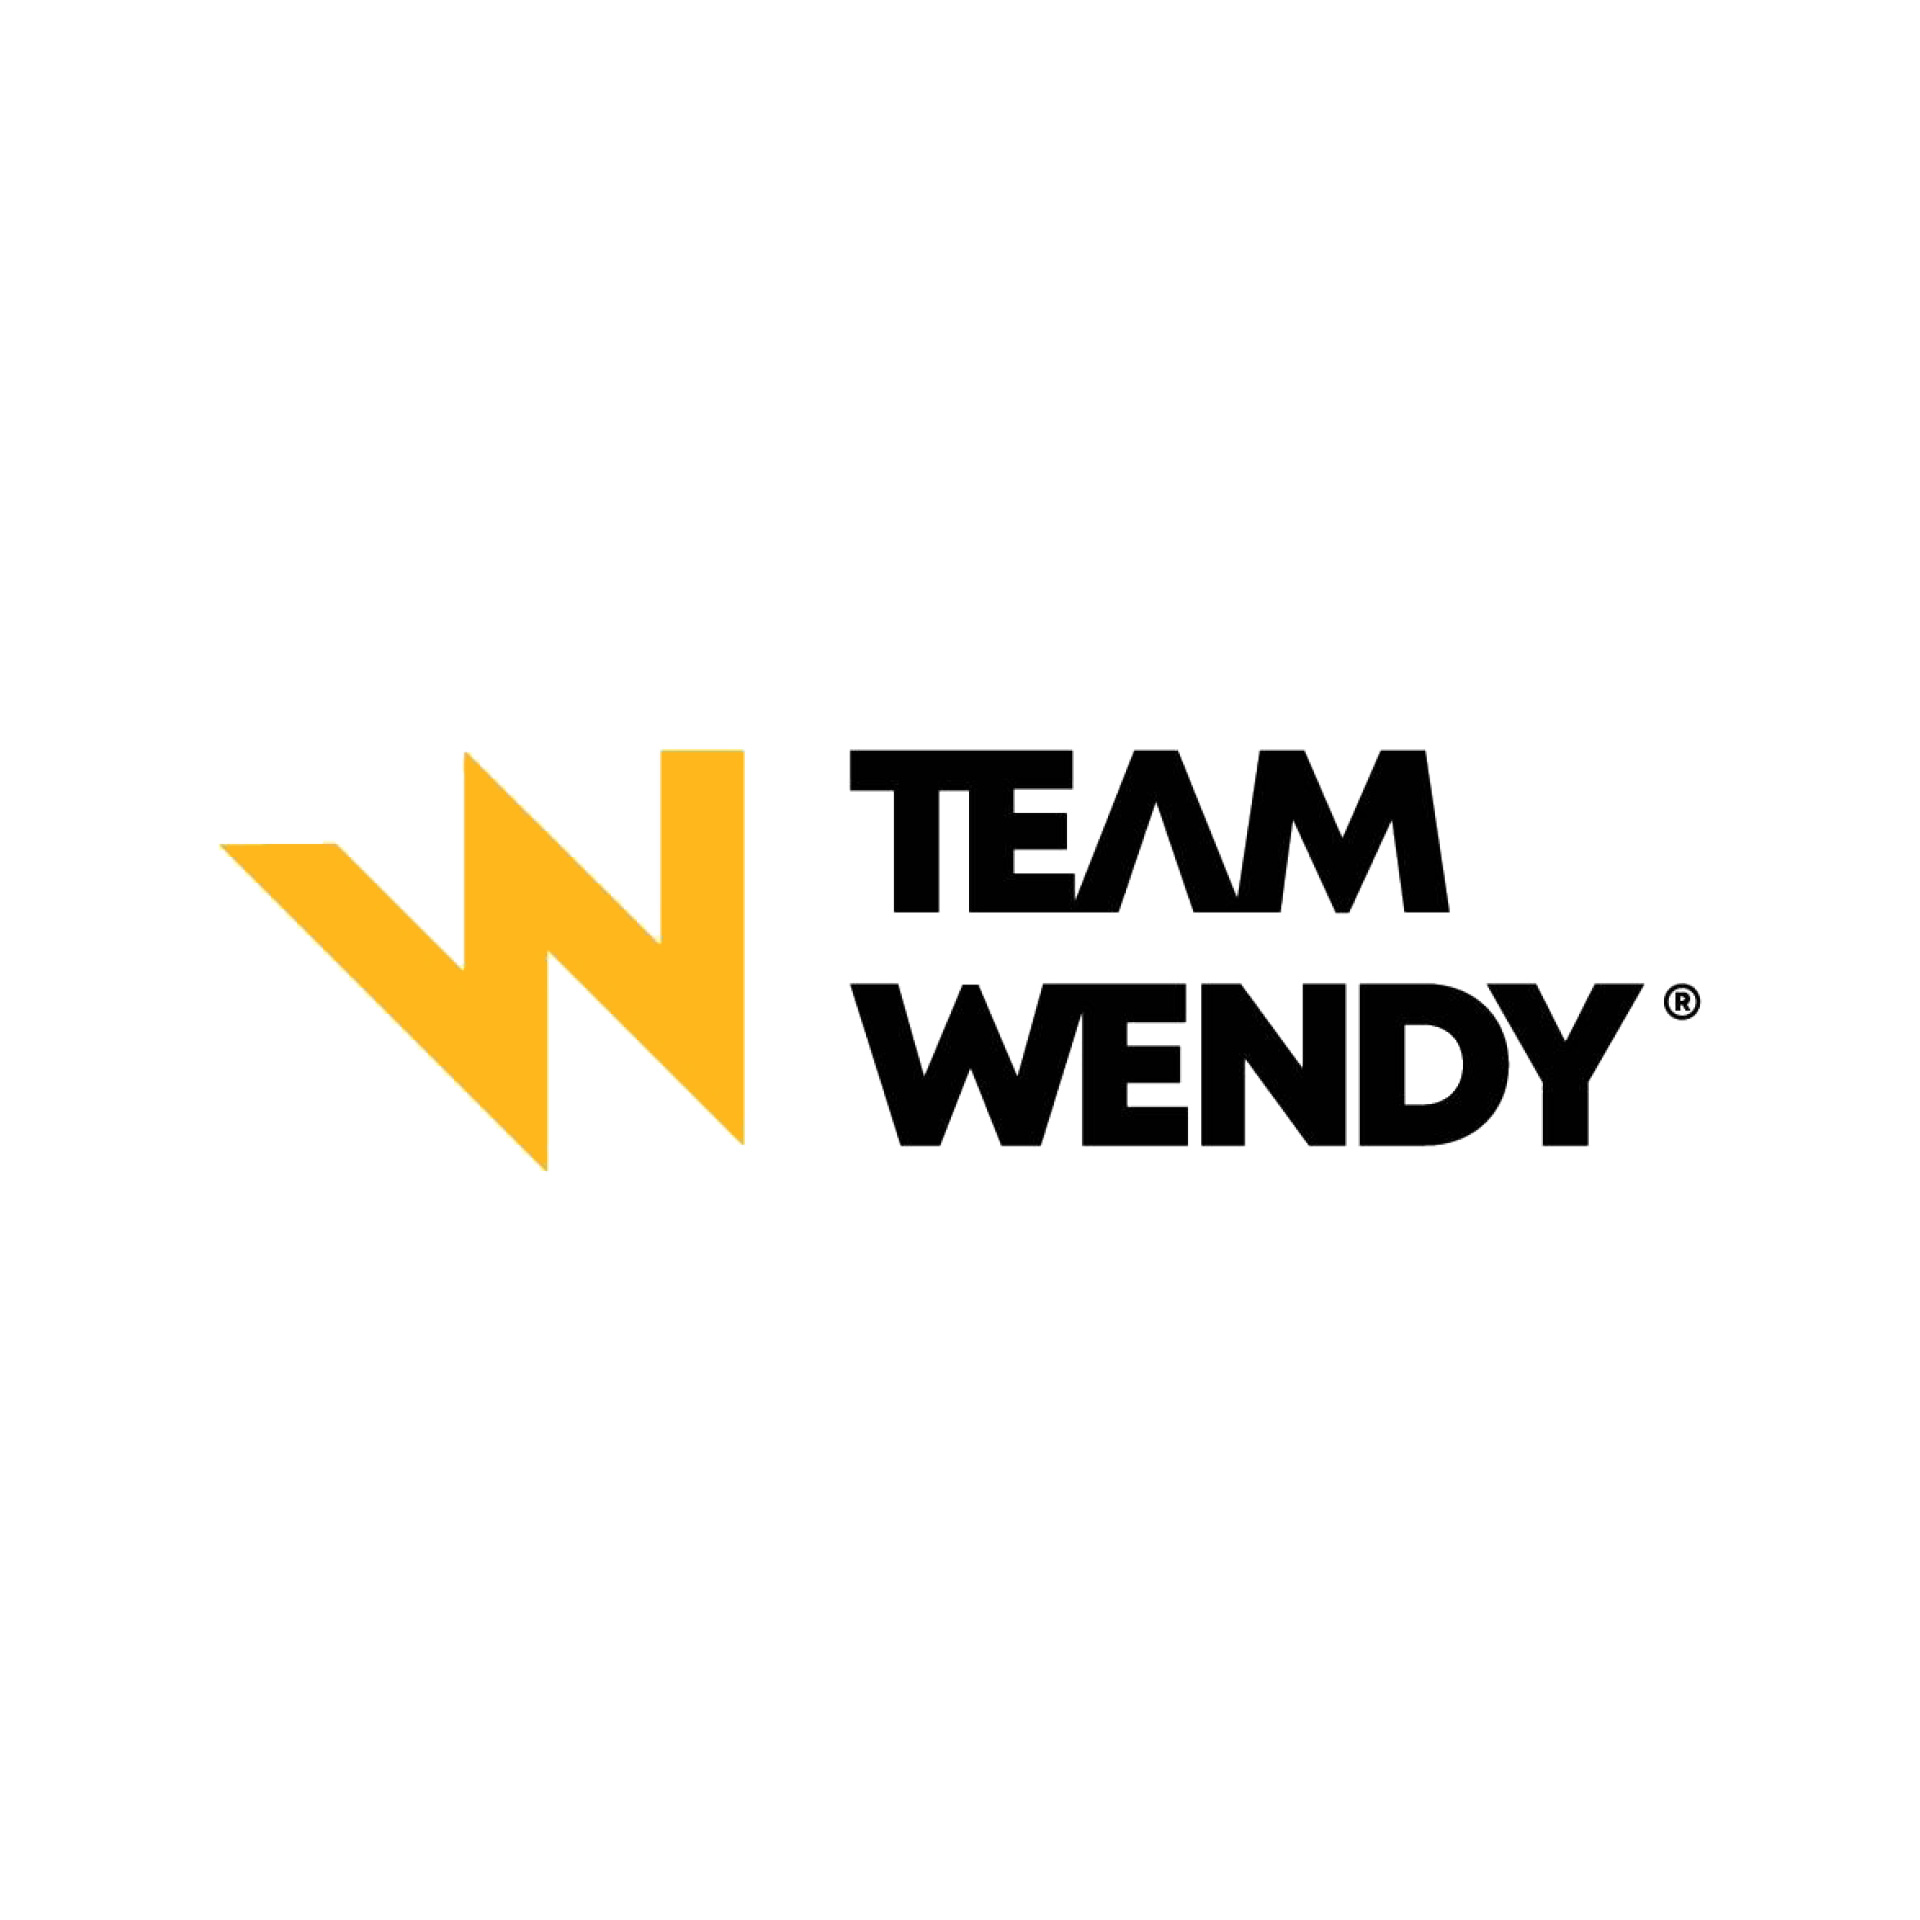 Team Wendy®